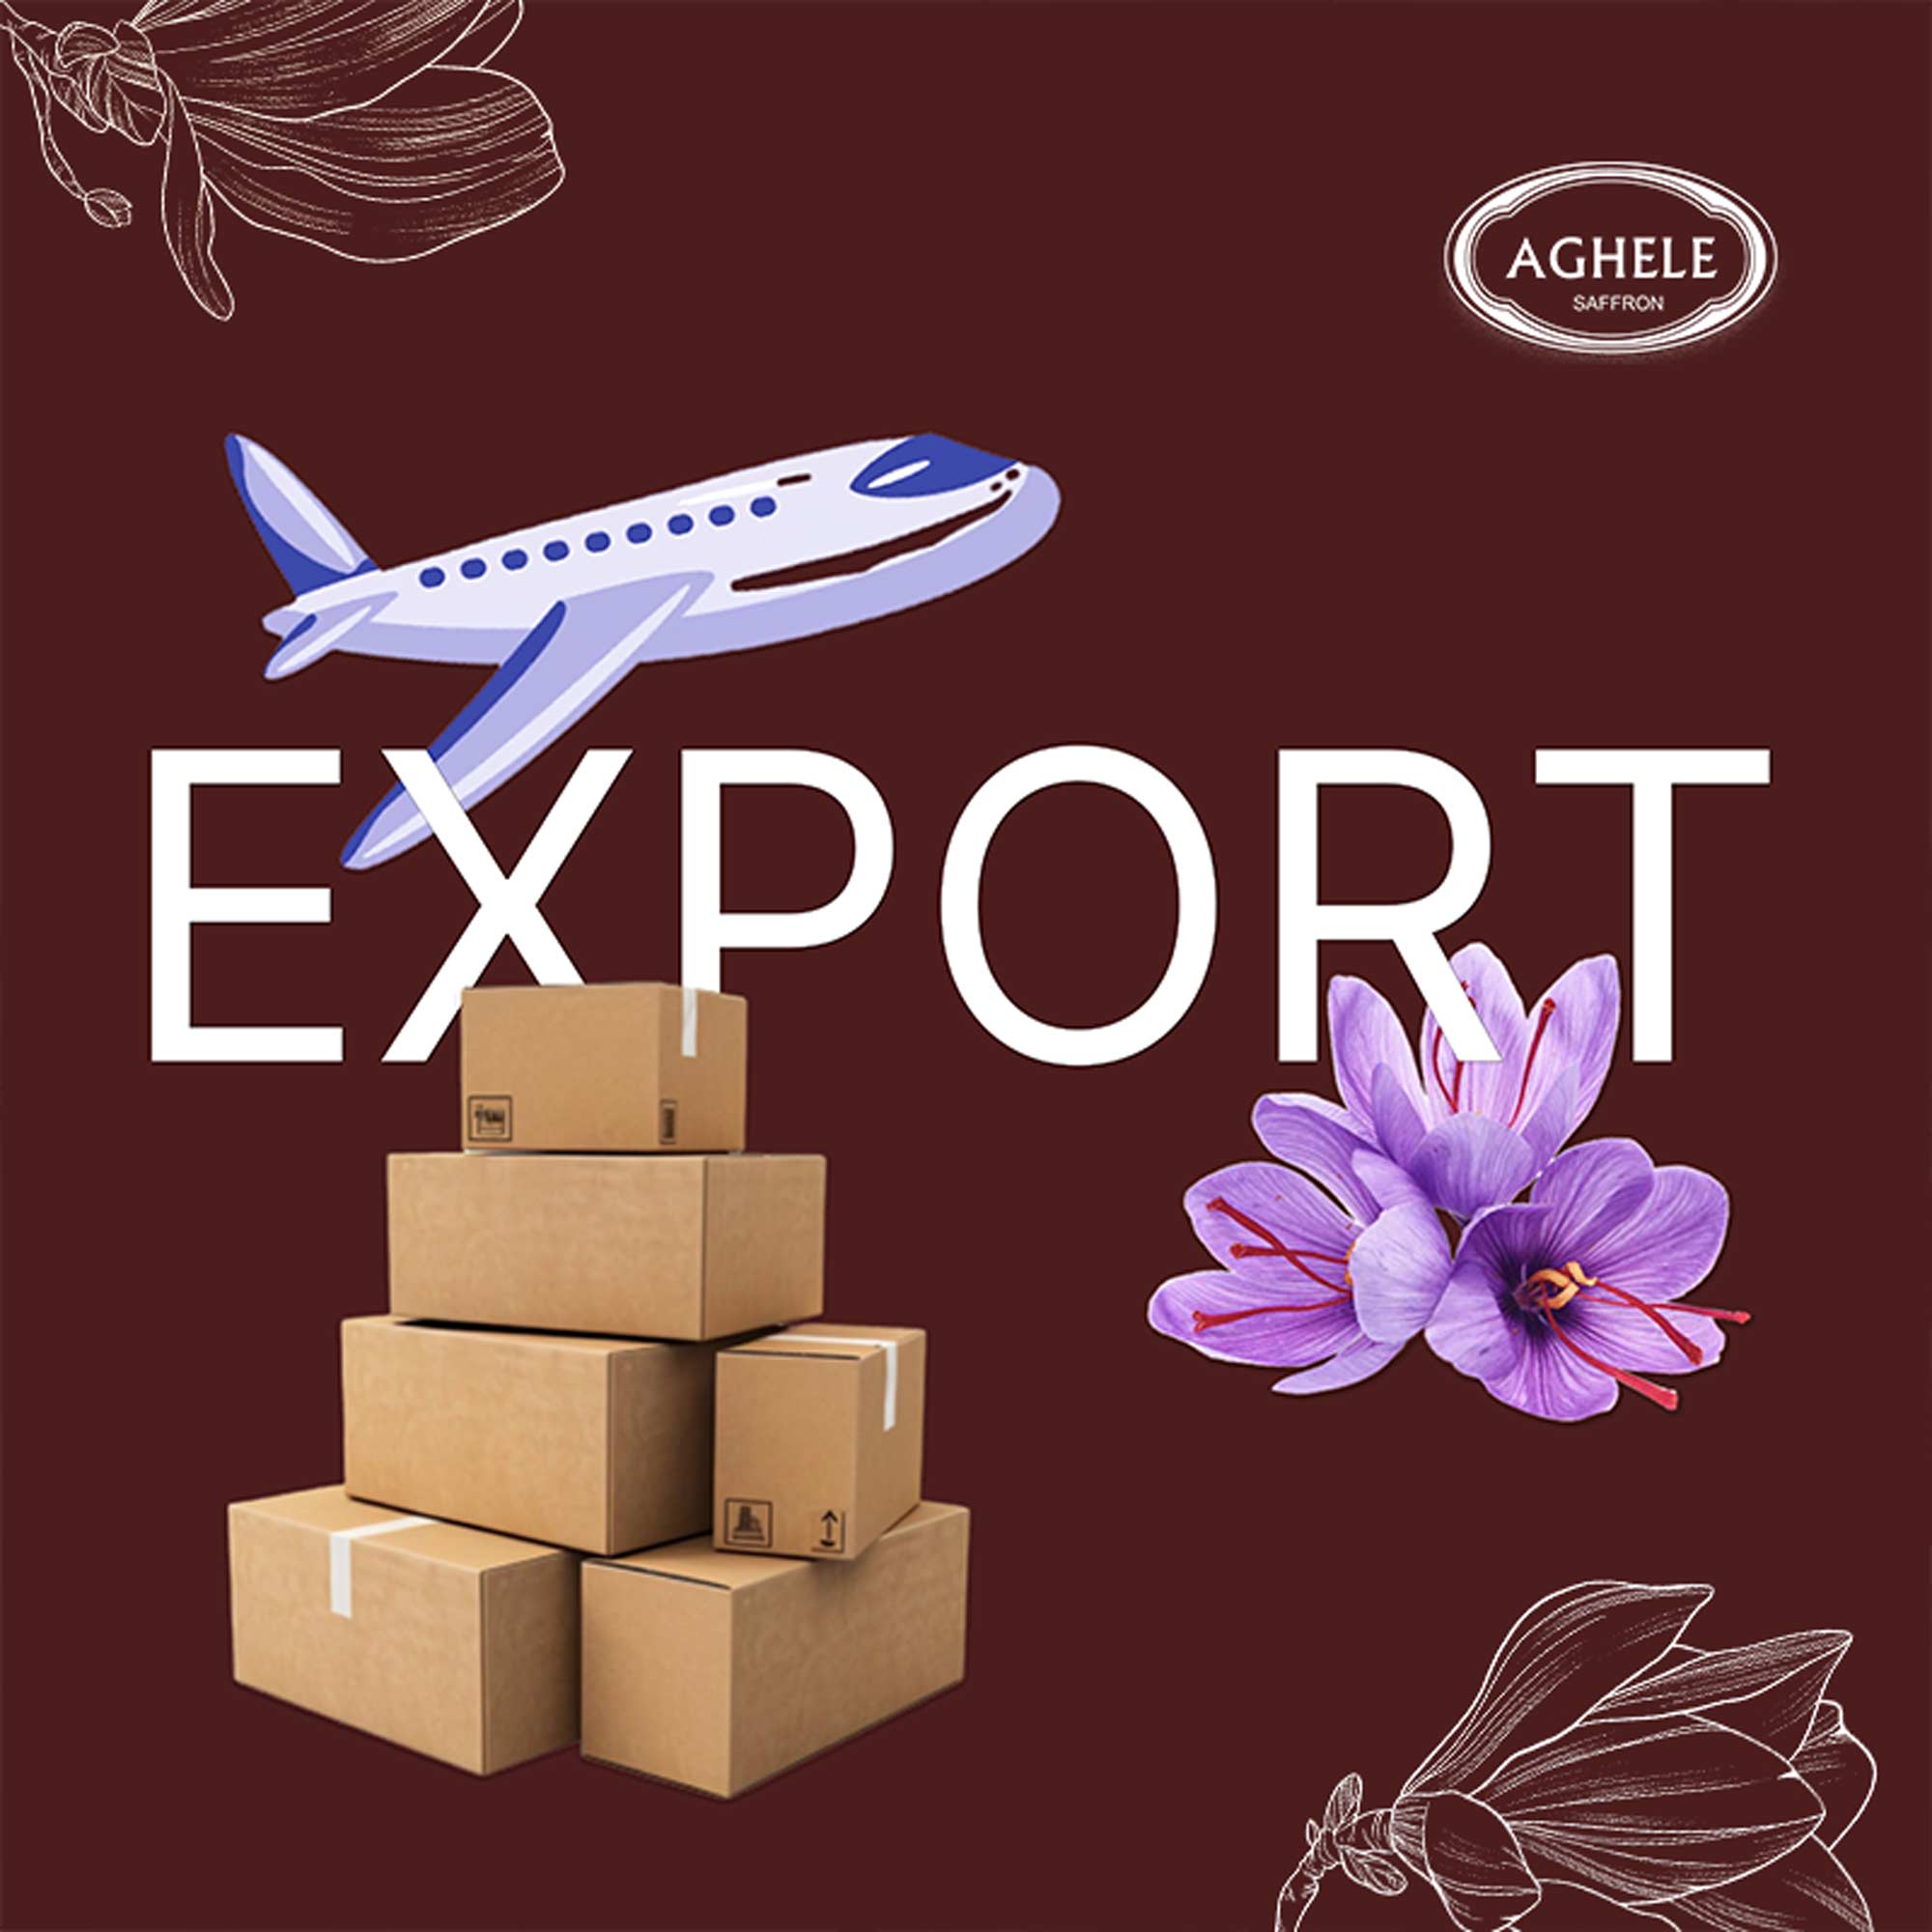 What features should export saffron have?